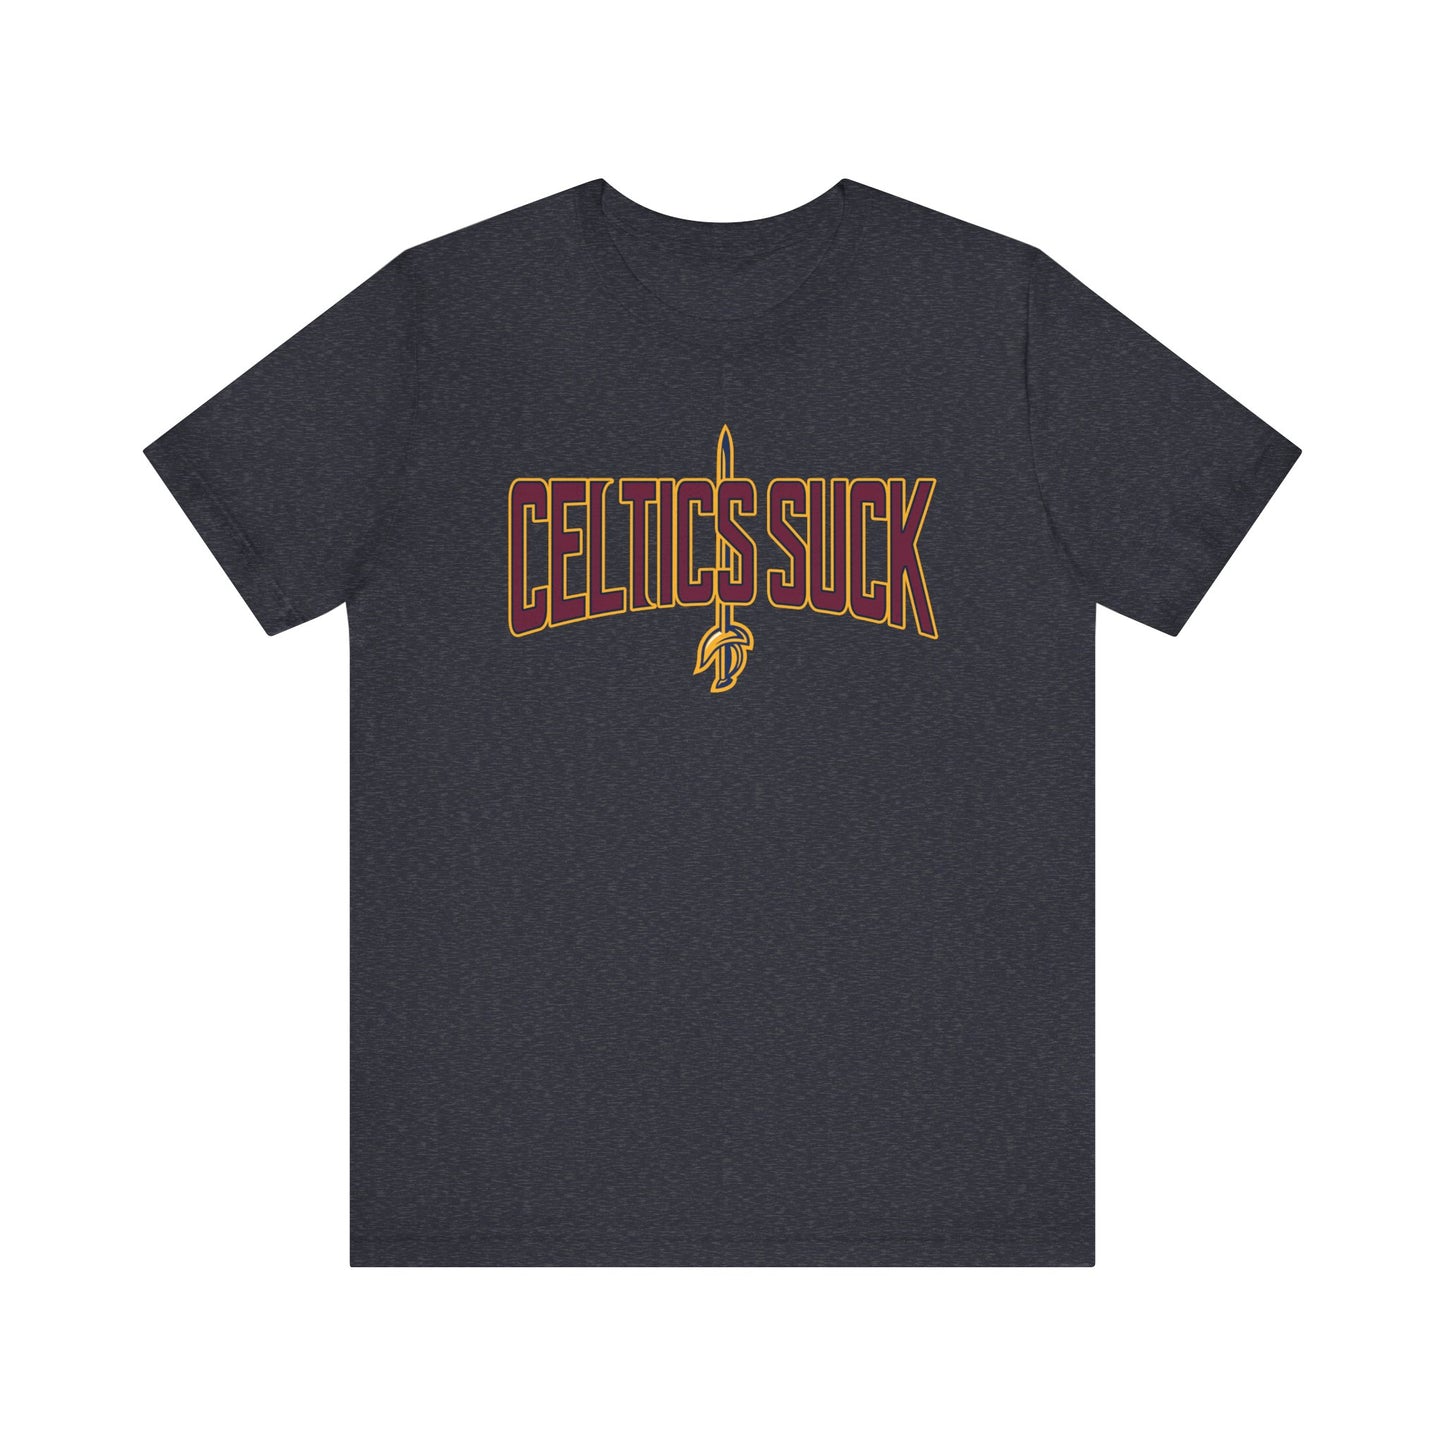 Selltix Suck (for Cleveland fans) - Unisex Jersey Short Sleeve Tee